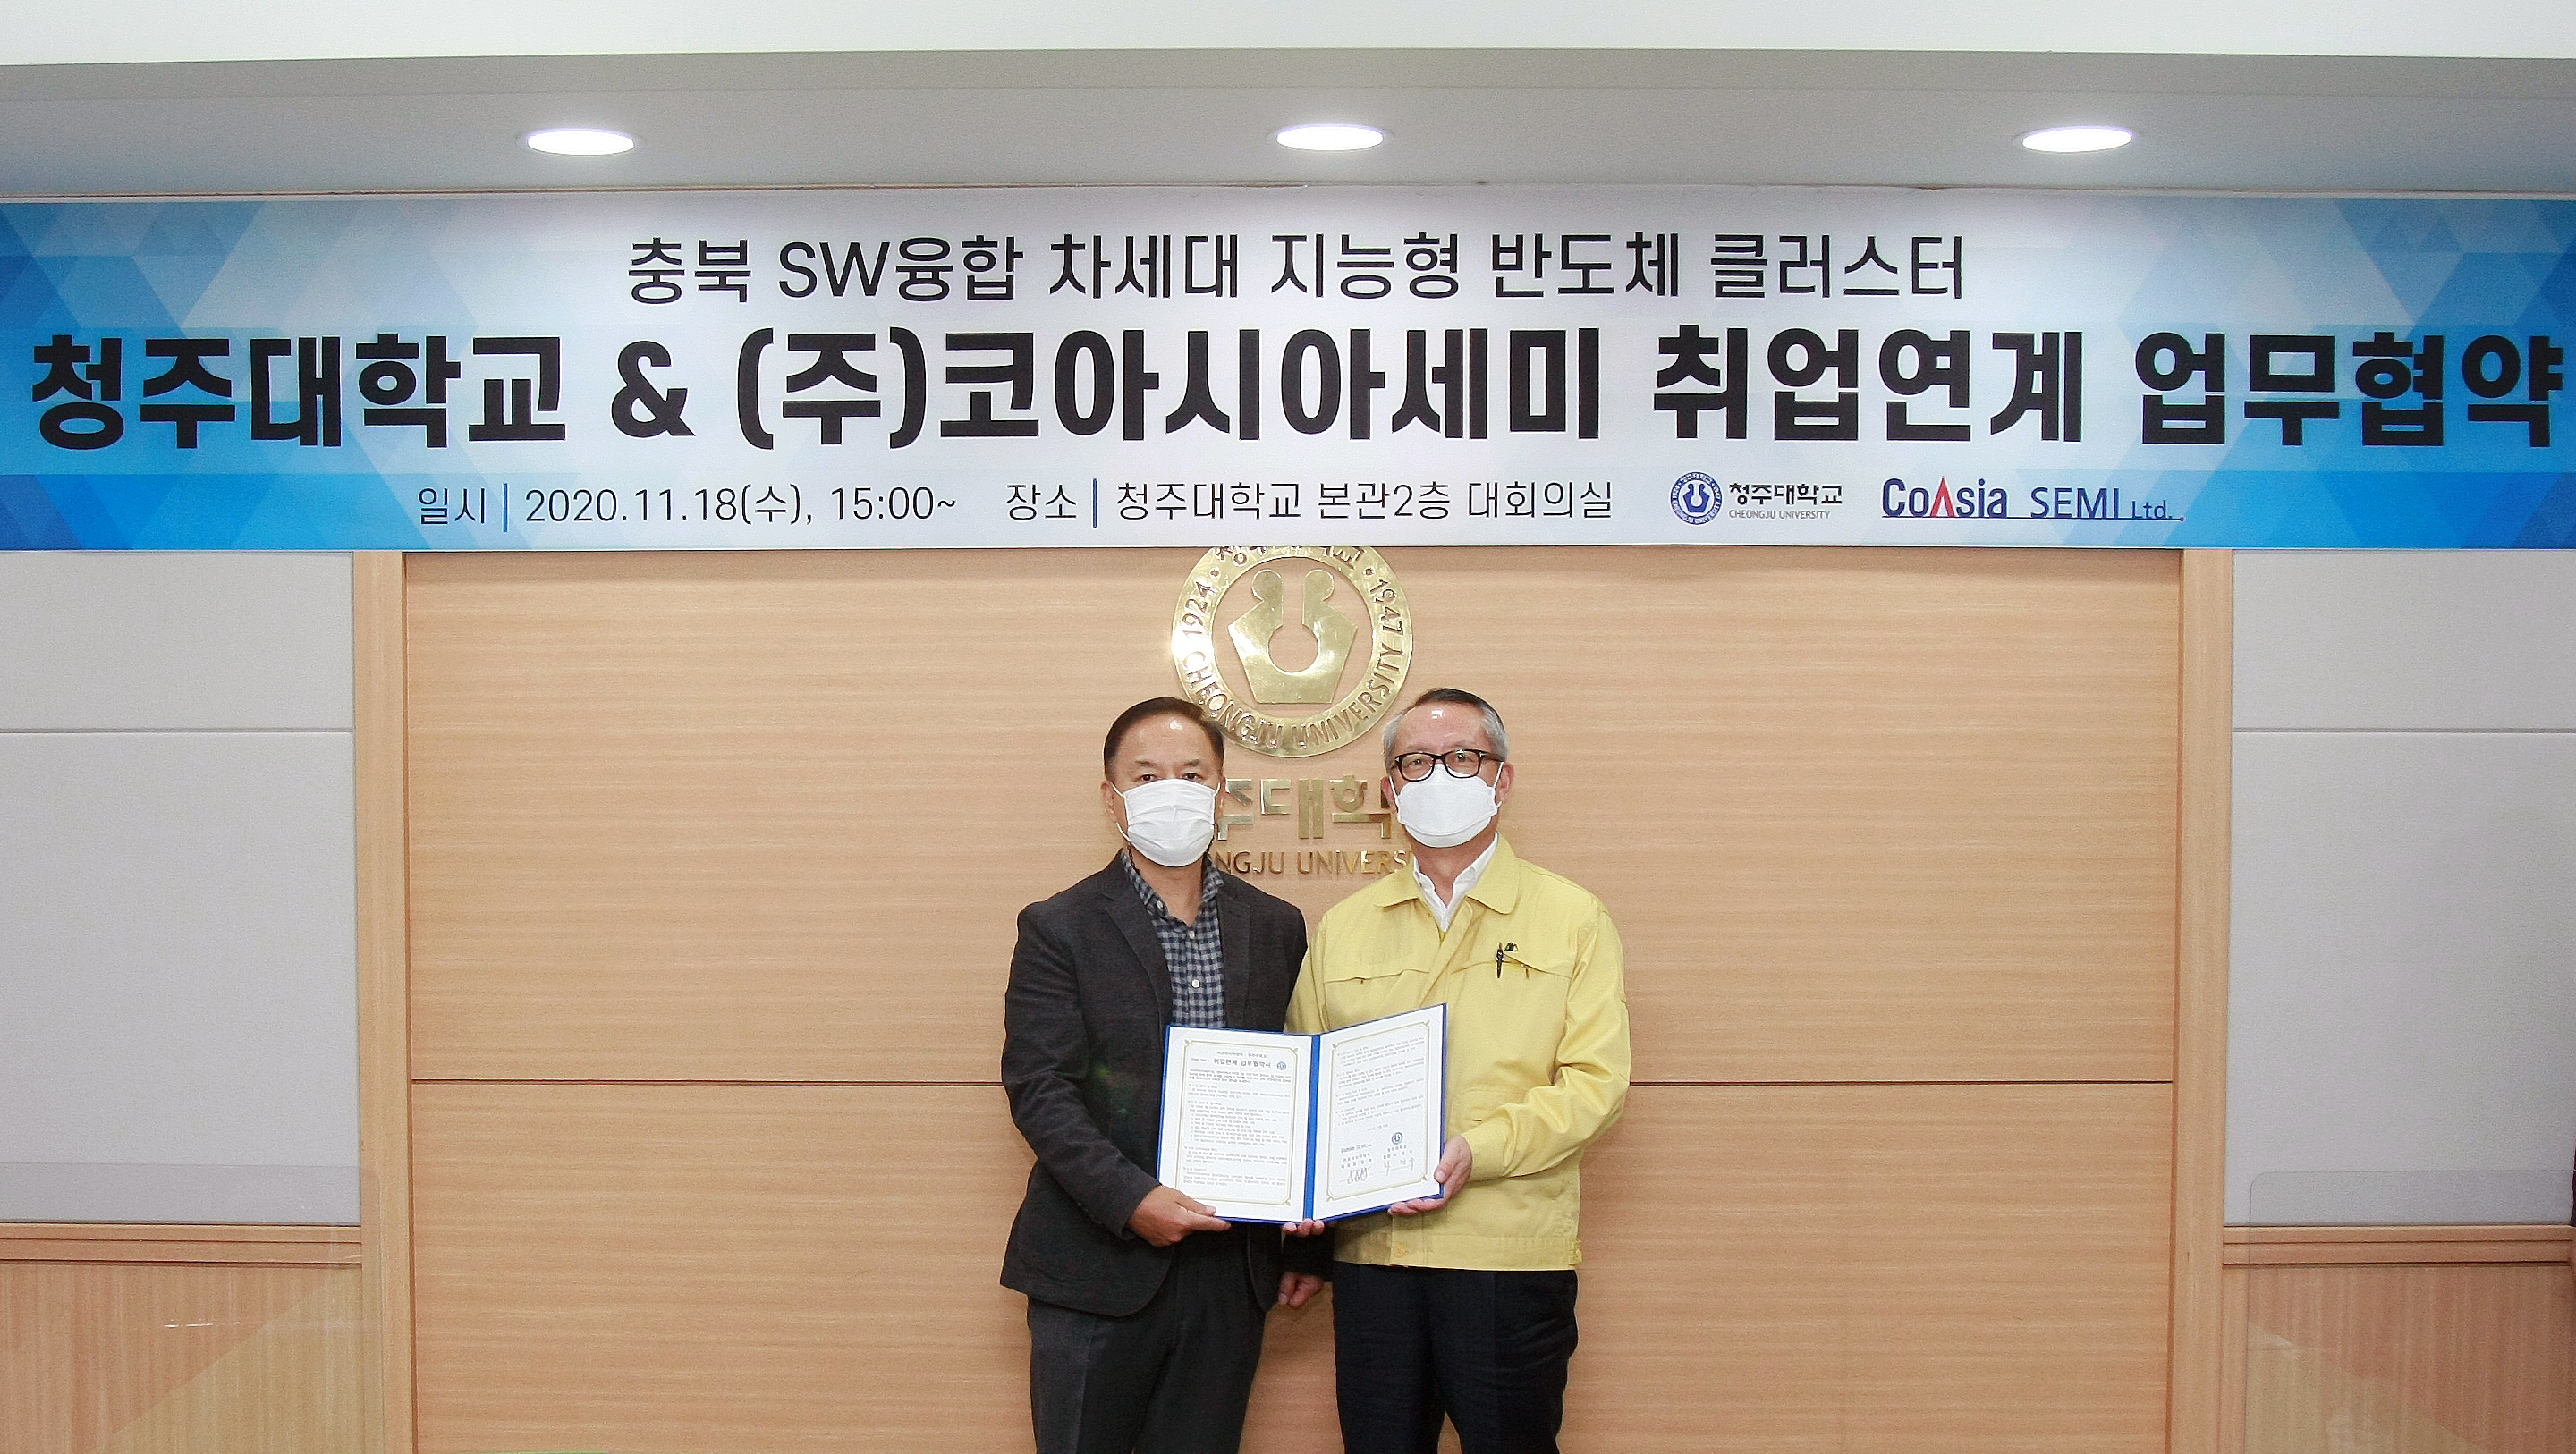 차천수 청주대학교 총장과 김경호 ㈜코아시아세미 대표가 ‘지능형 반도체 SW 융합 교육을 통한 전문인력 취업연계’ 업무협약을 체결한 후 기념촬영을 하고 있다.